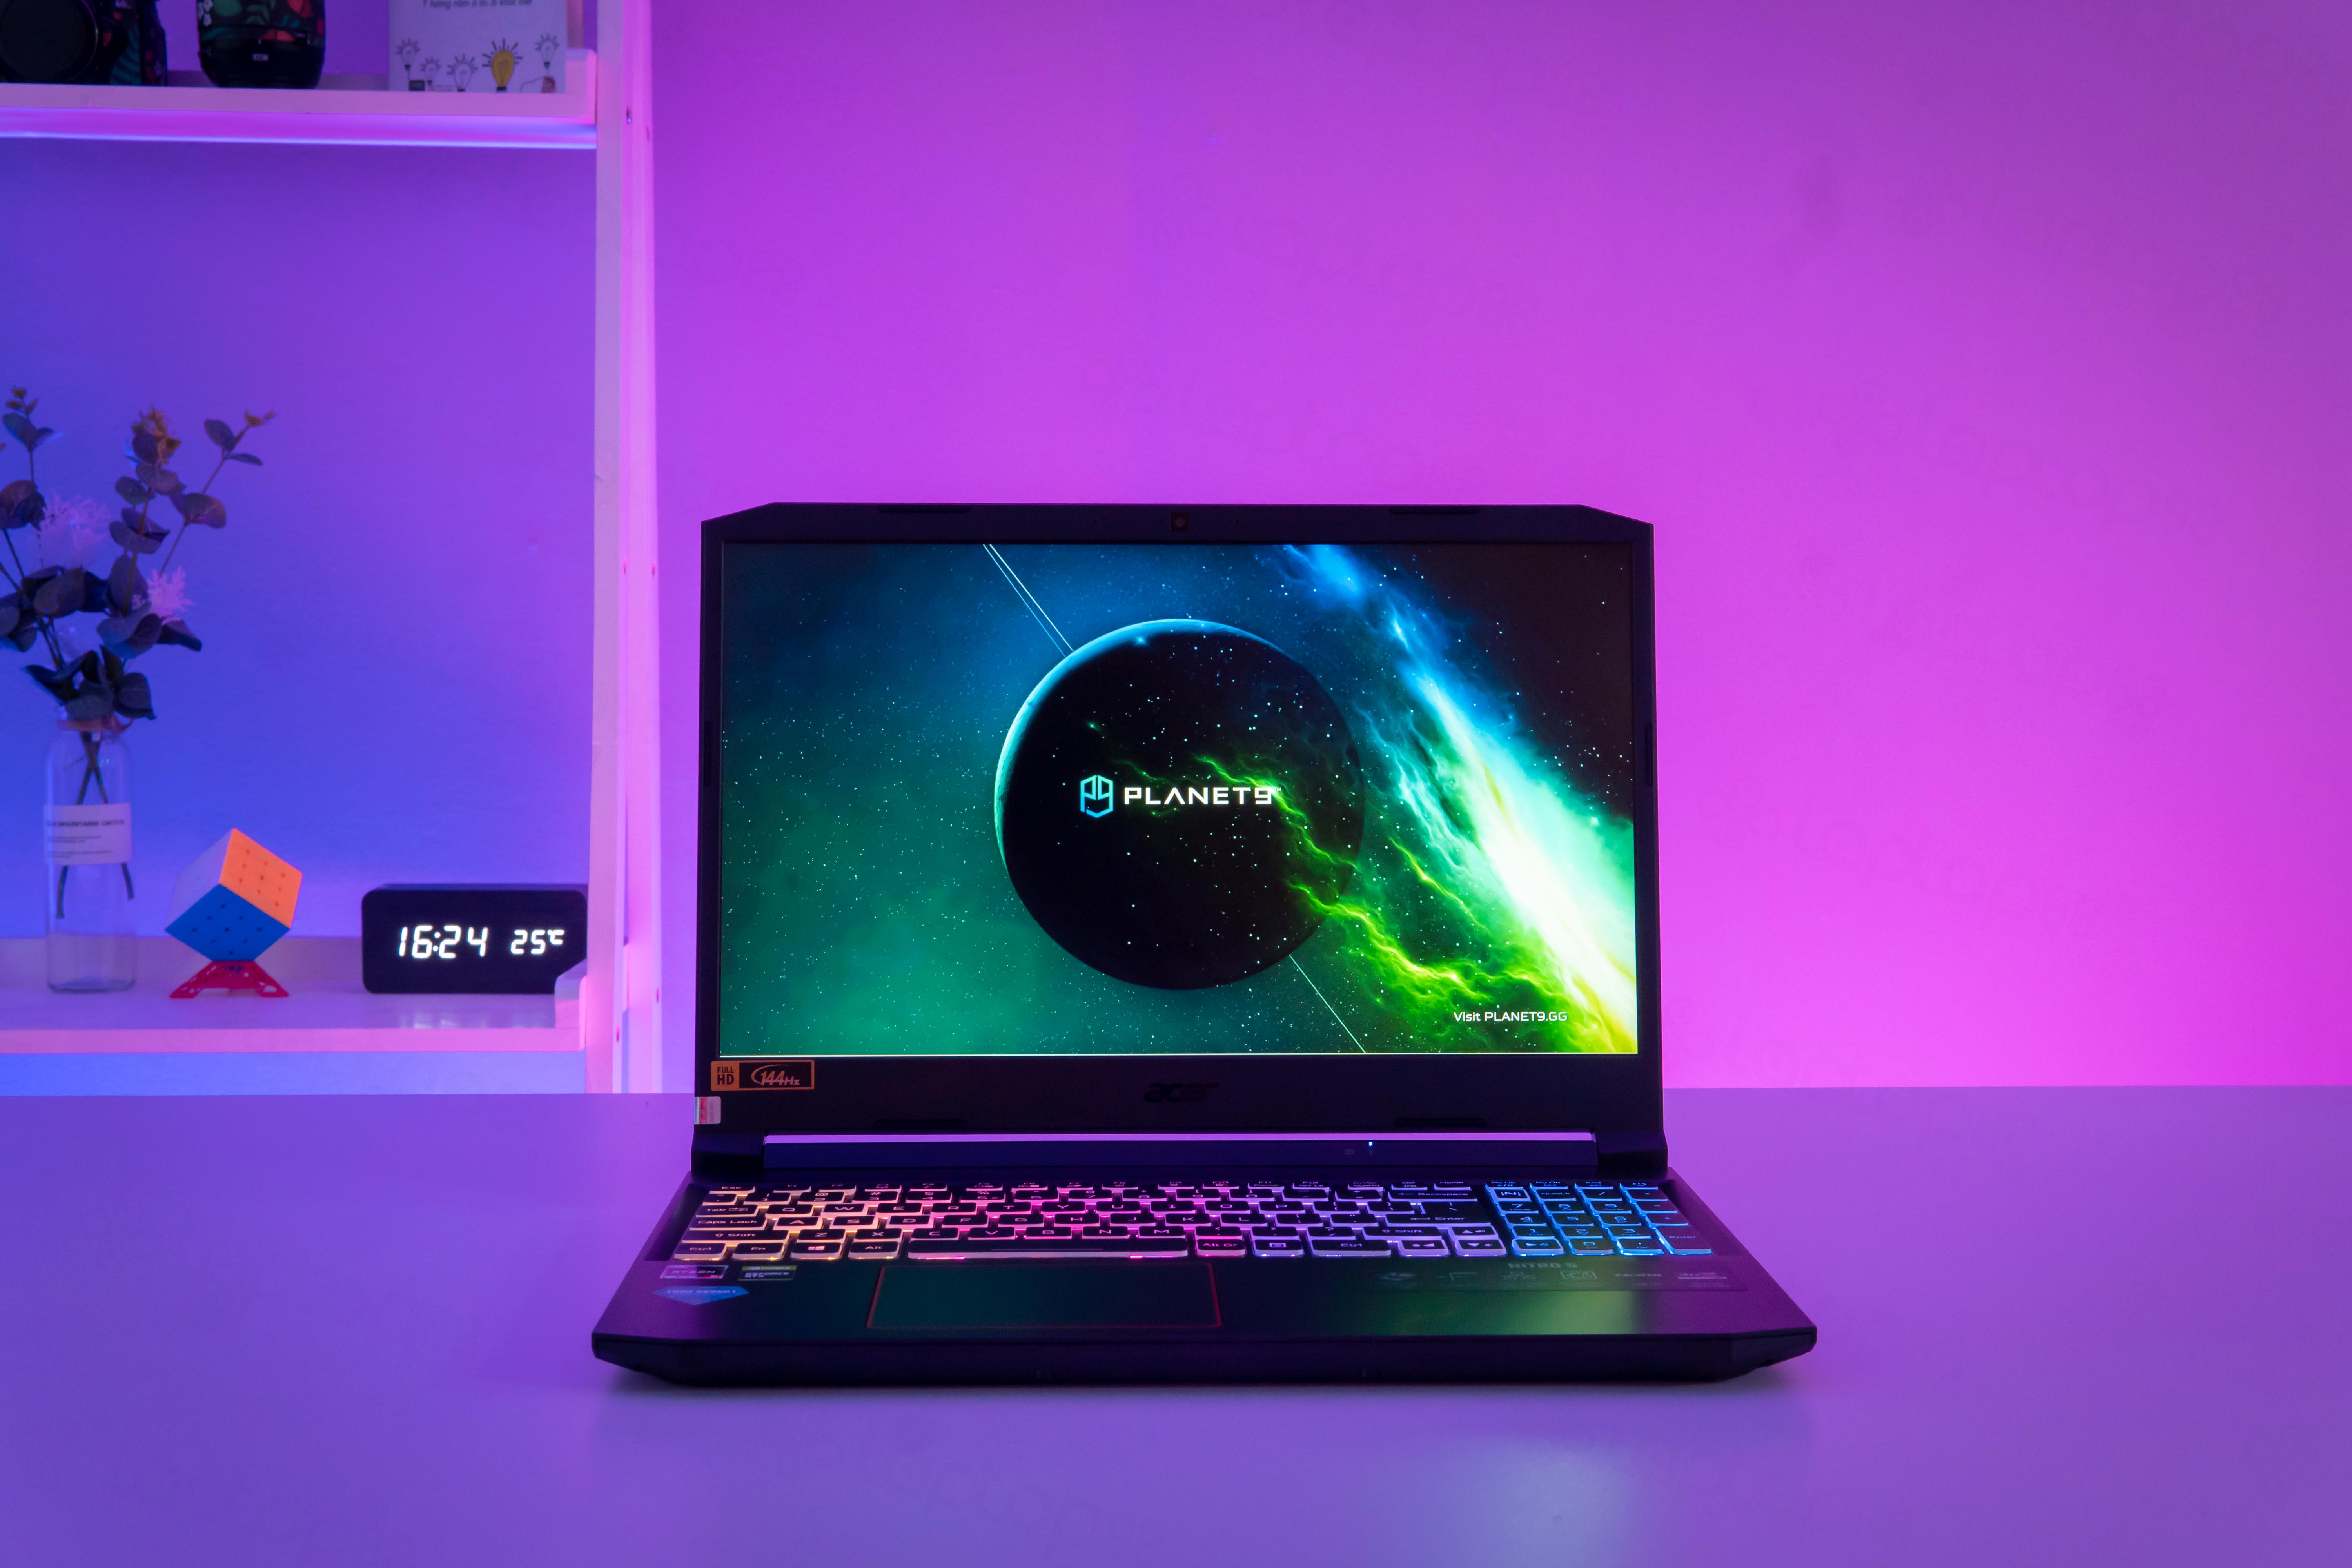 Bộ ảnh nền Neon Lights huyền ảo cực đẹp giúp màn hình desktop ấn tượng hơn.